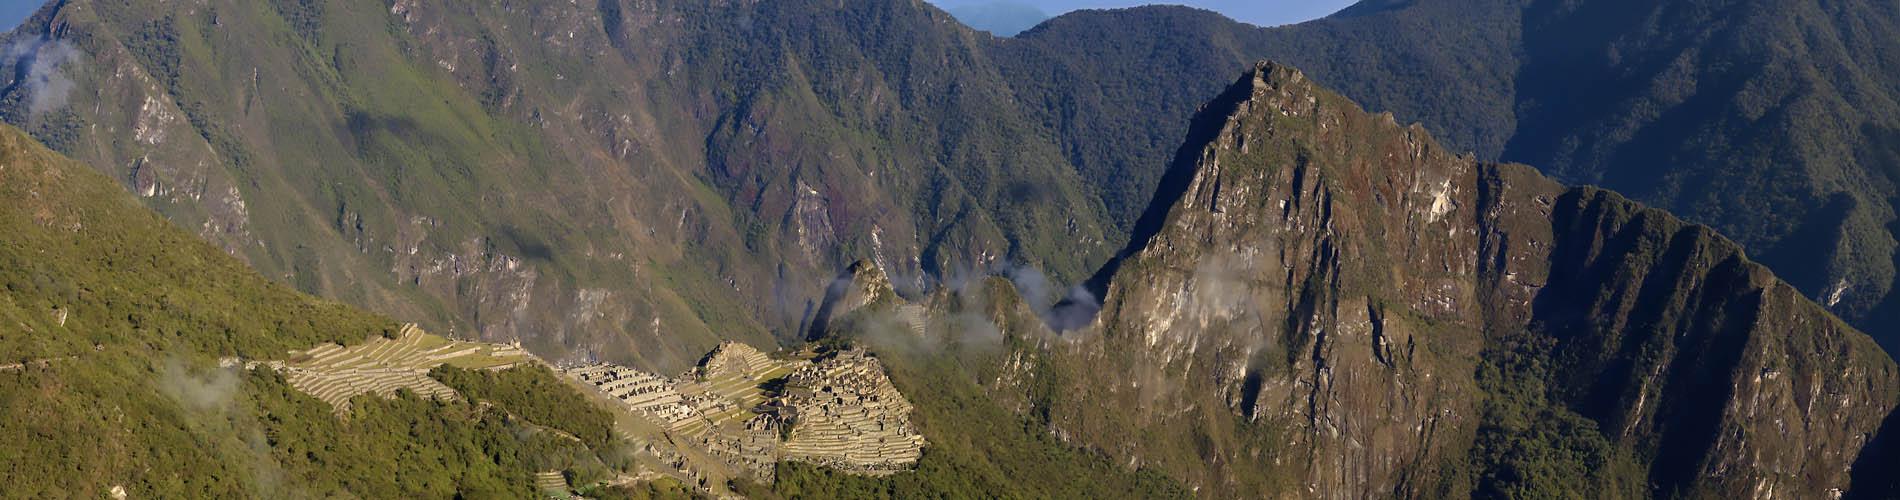 Inti Punku - The Gateway to Inca History